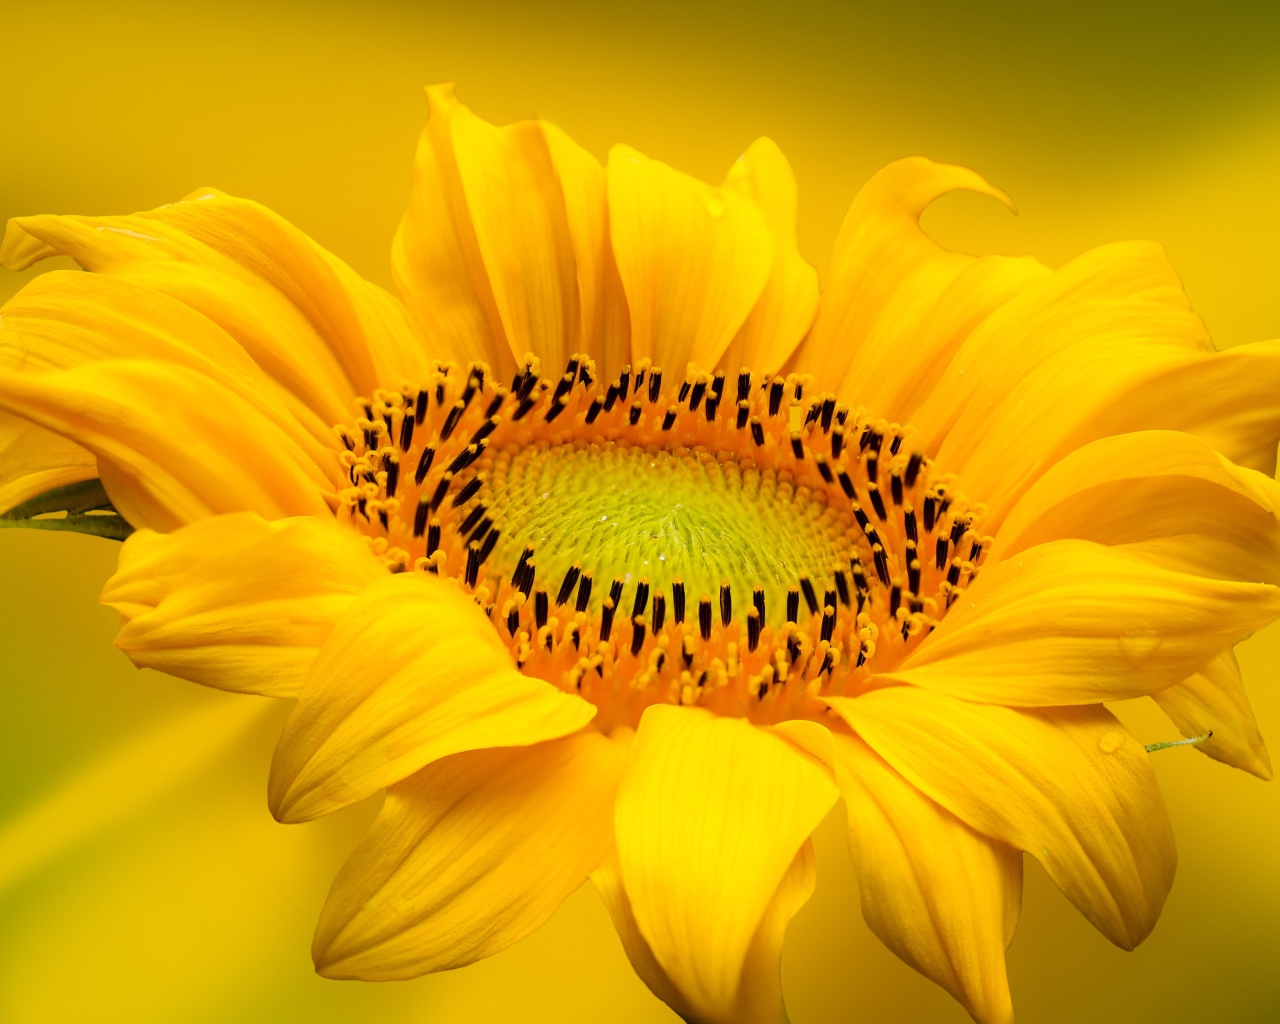 Красивый желтый цветок подсолнуха на желтом фоне